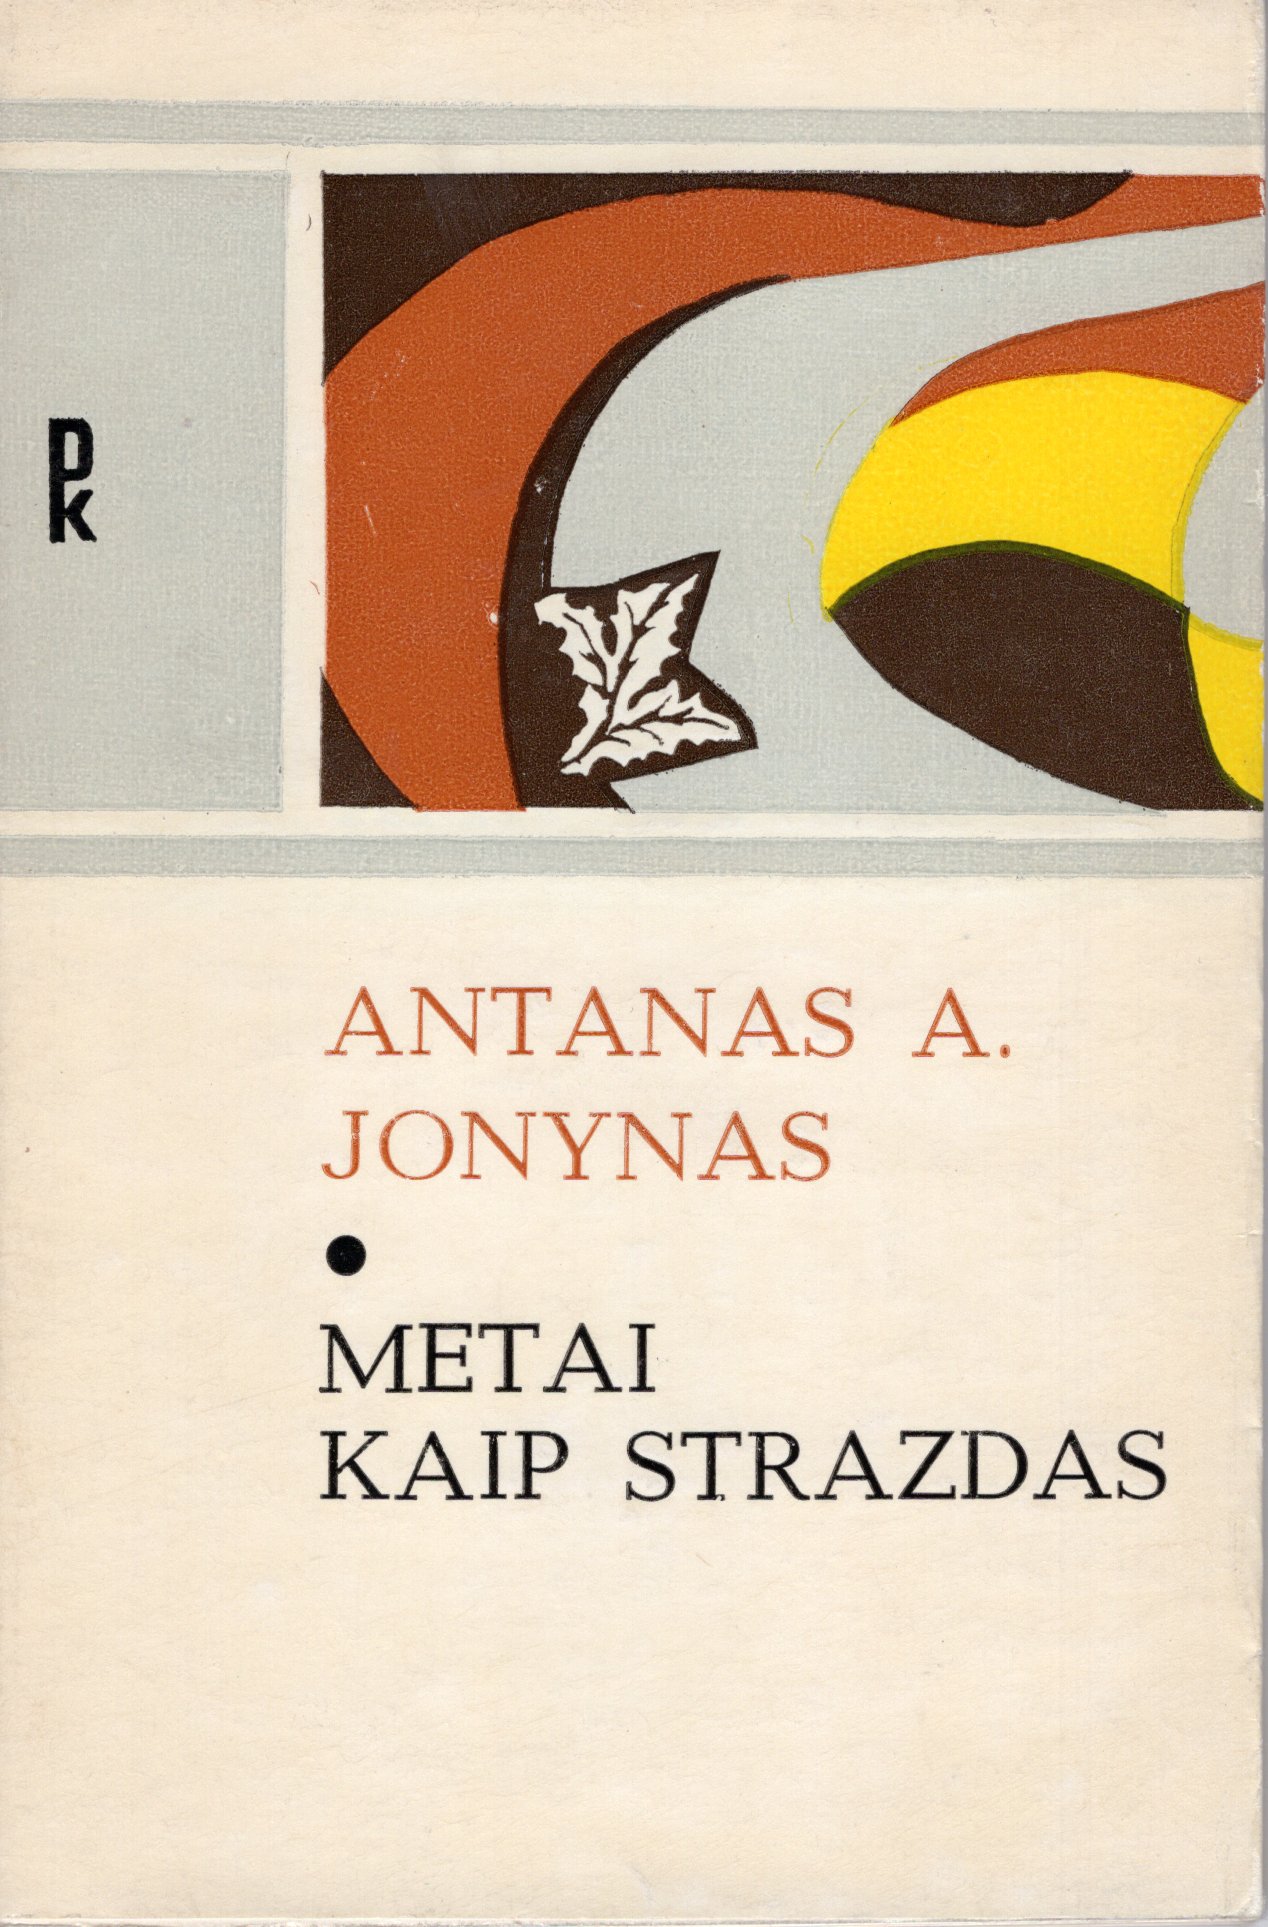 Pirmoji Antano A. Jonyno knyga, skirta tėvui. Vilnius. Vaga, 1977 m. MLLM GEK 20535